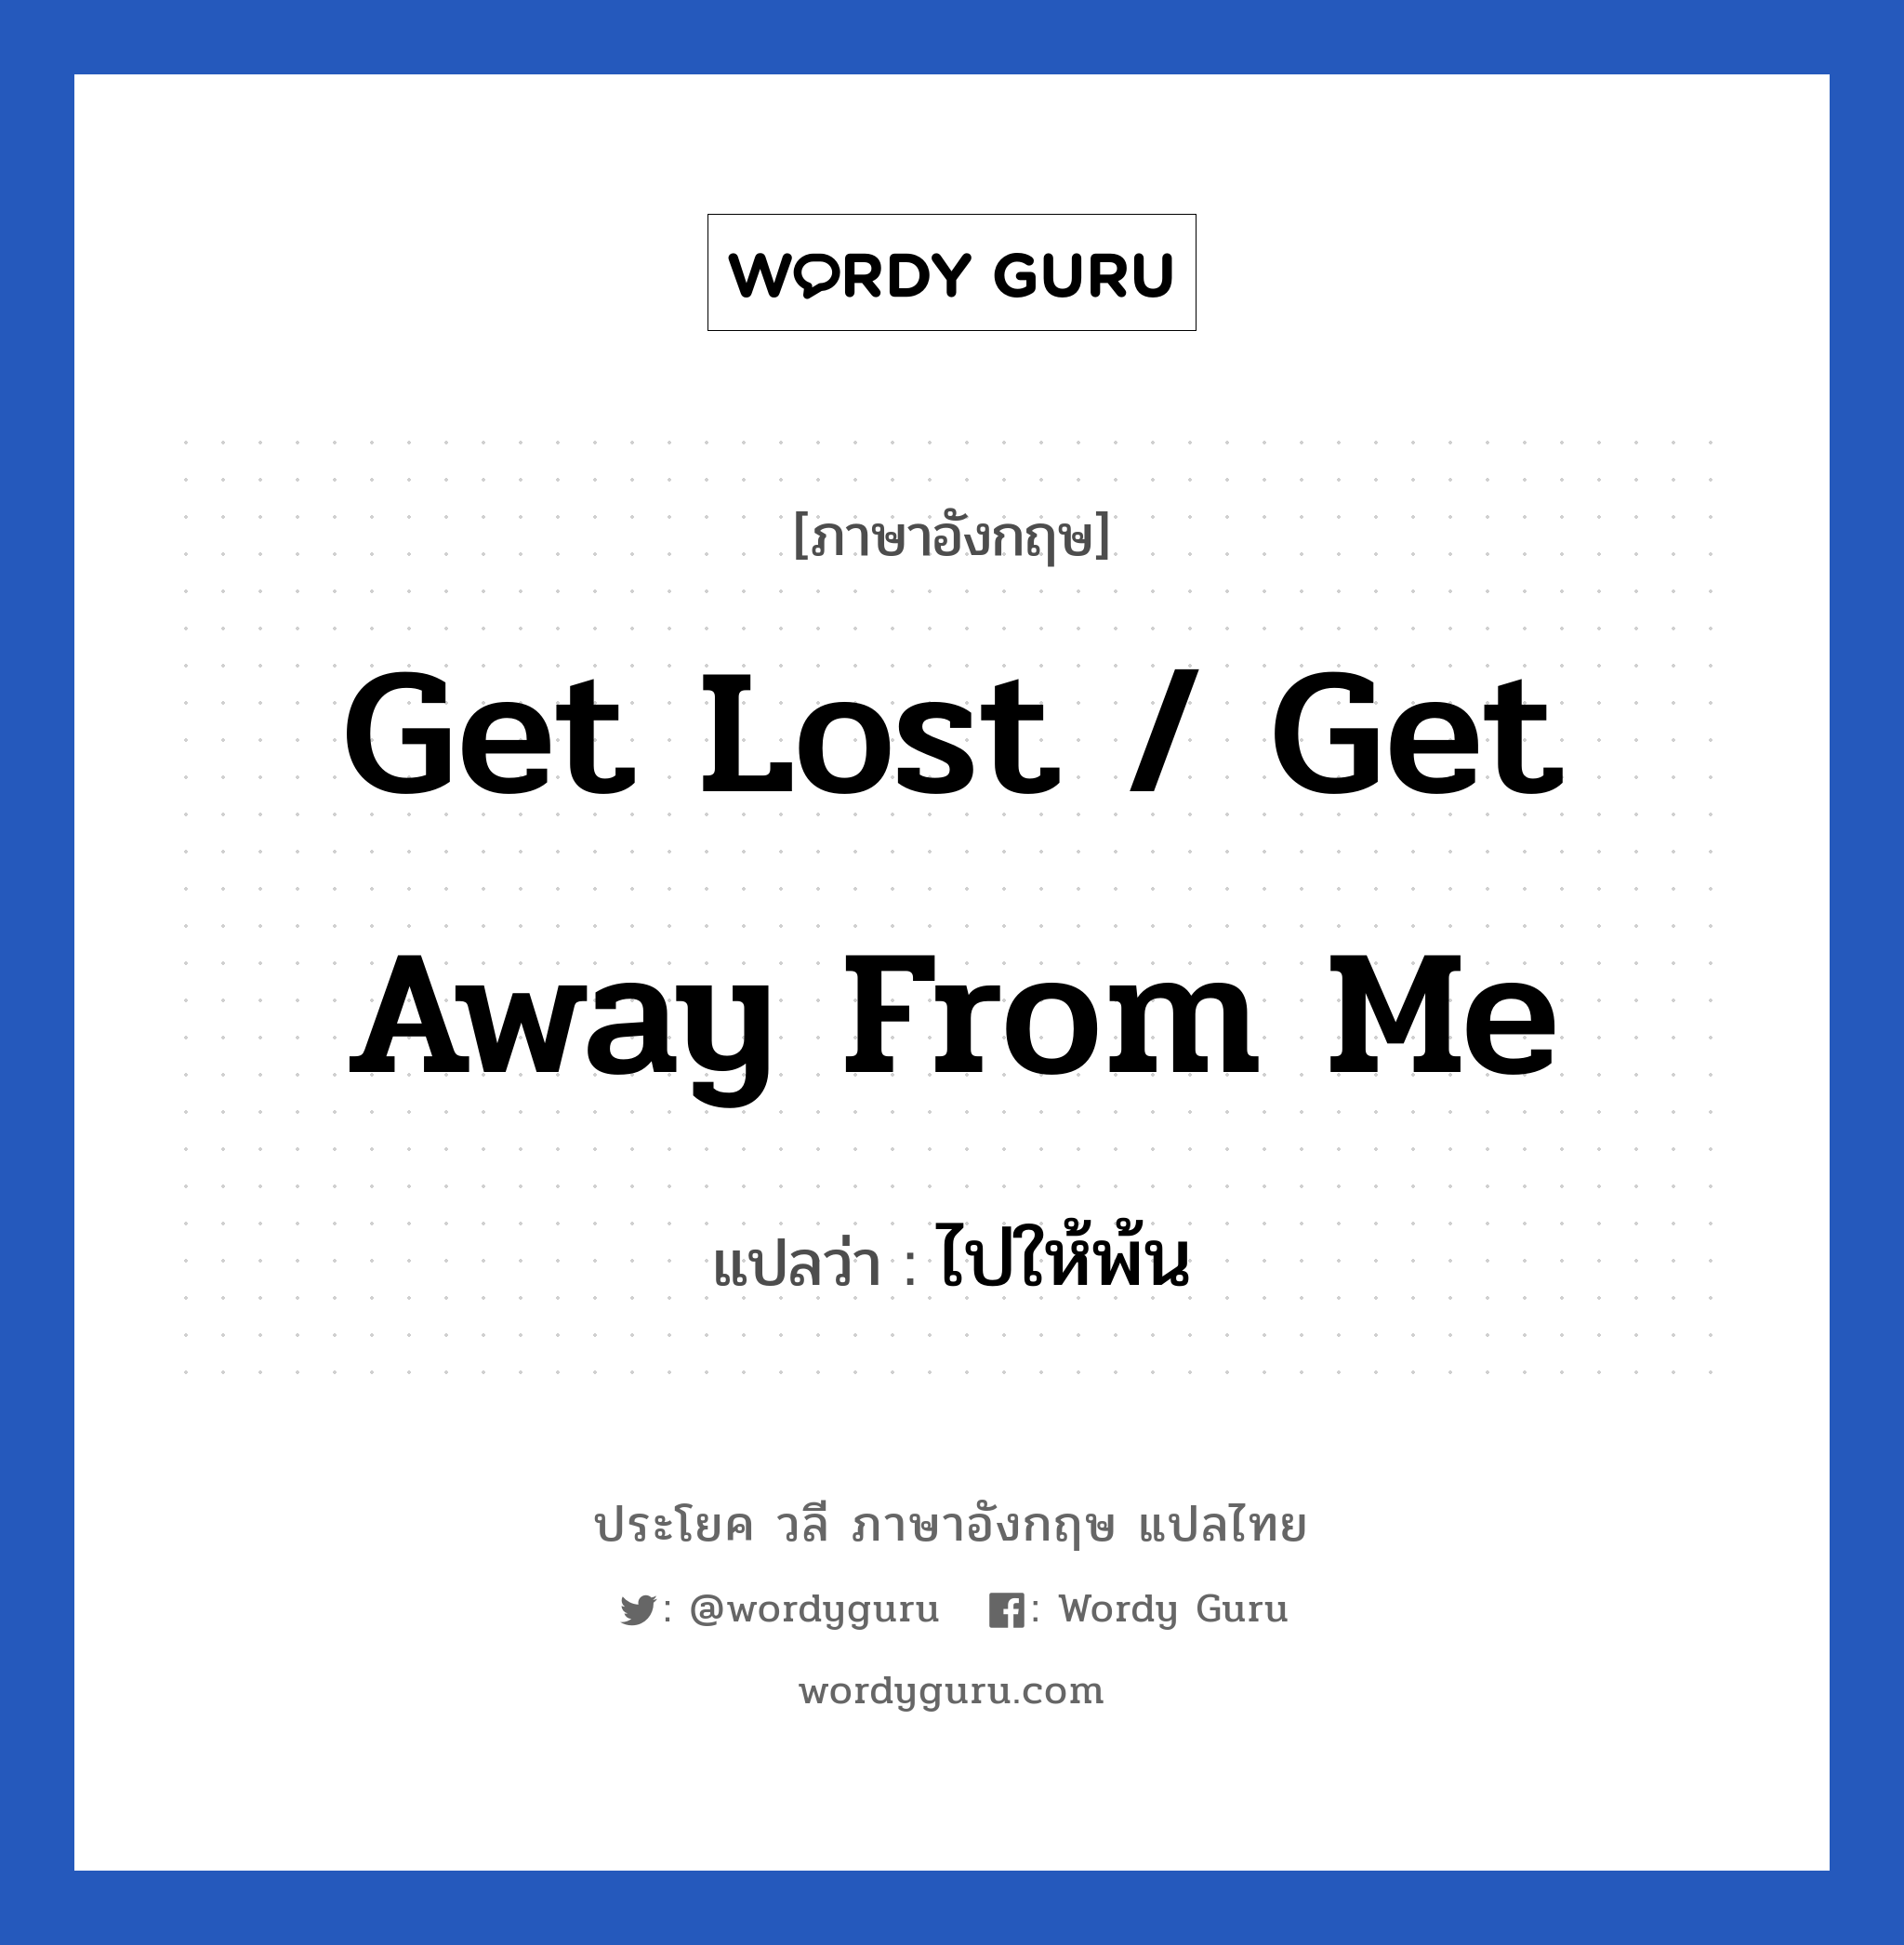 Get lost / Get away from me แปลว่า?, วลีภาษาอังกฤษ Get lost / Get away from me แปลว่า ไปให้พ้น